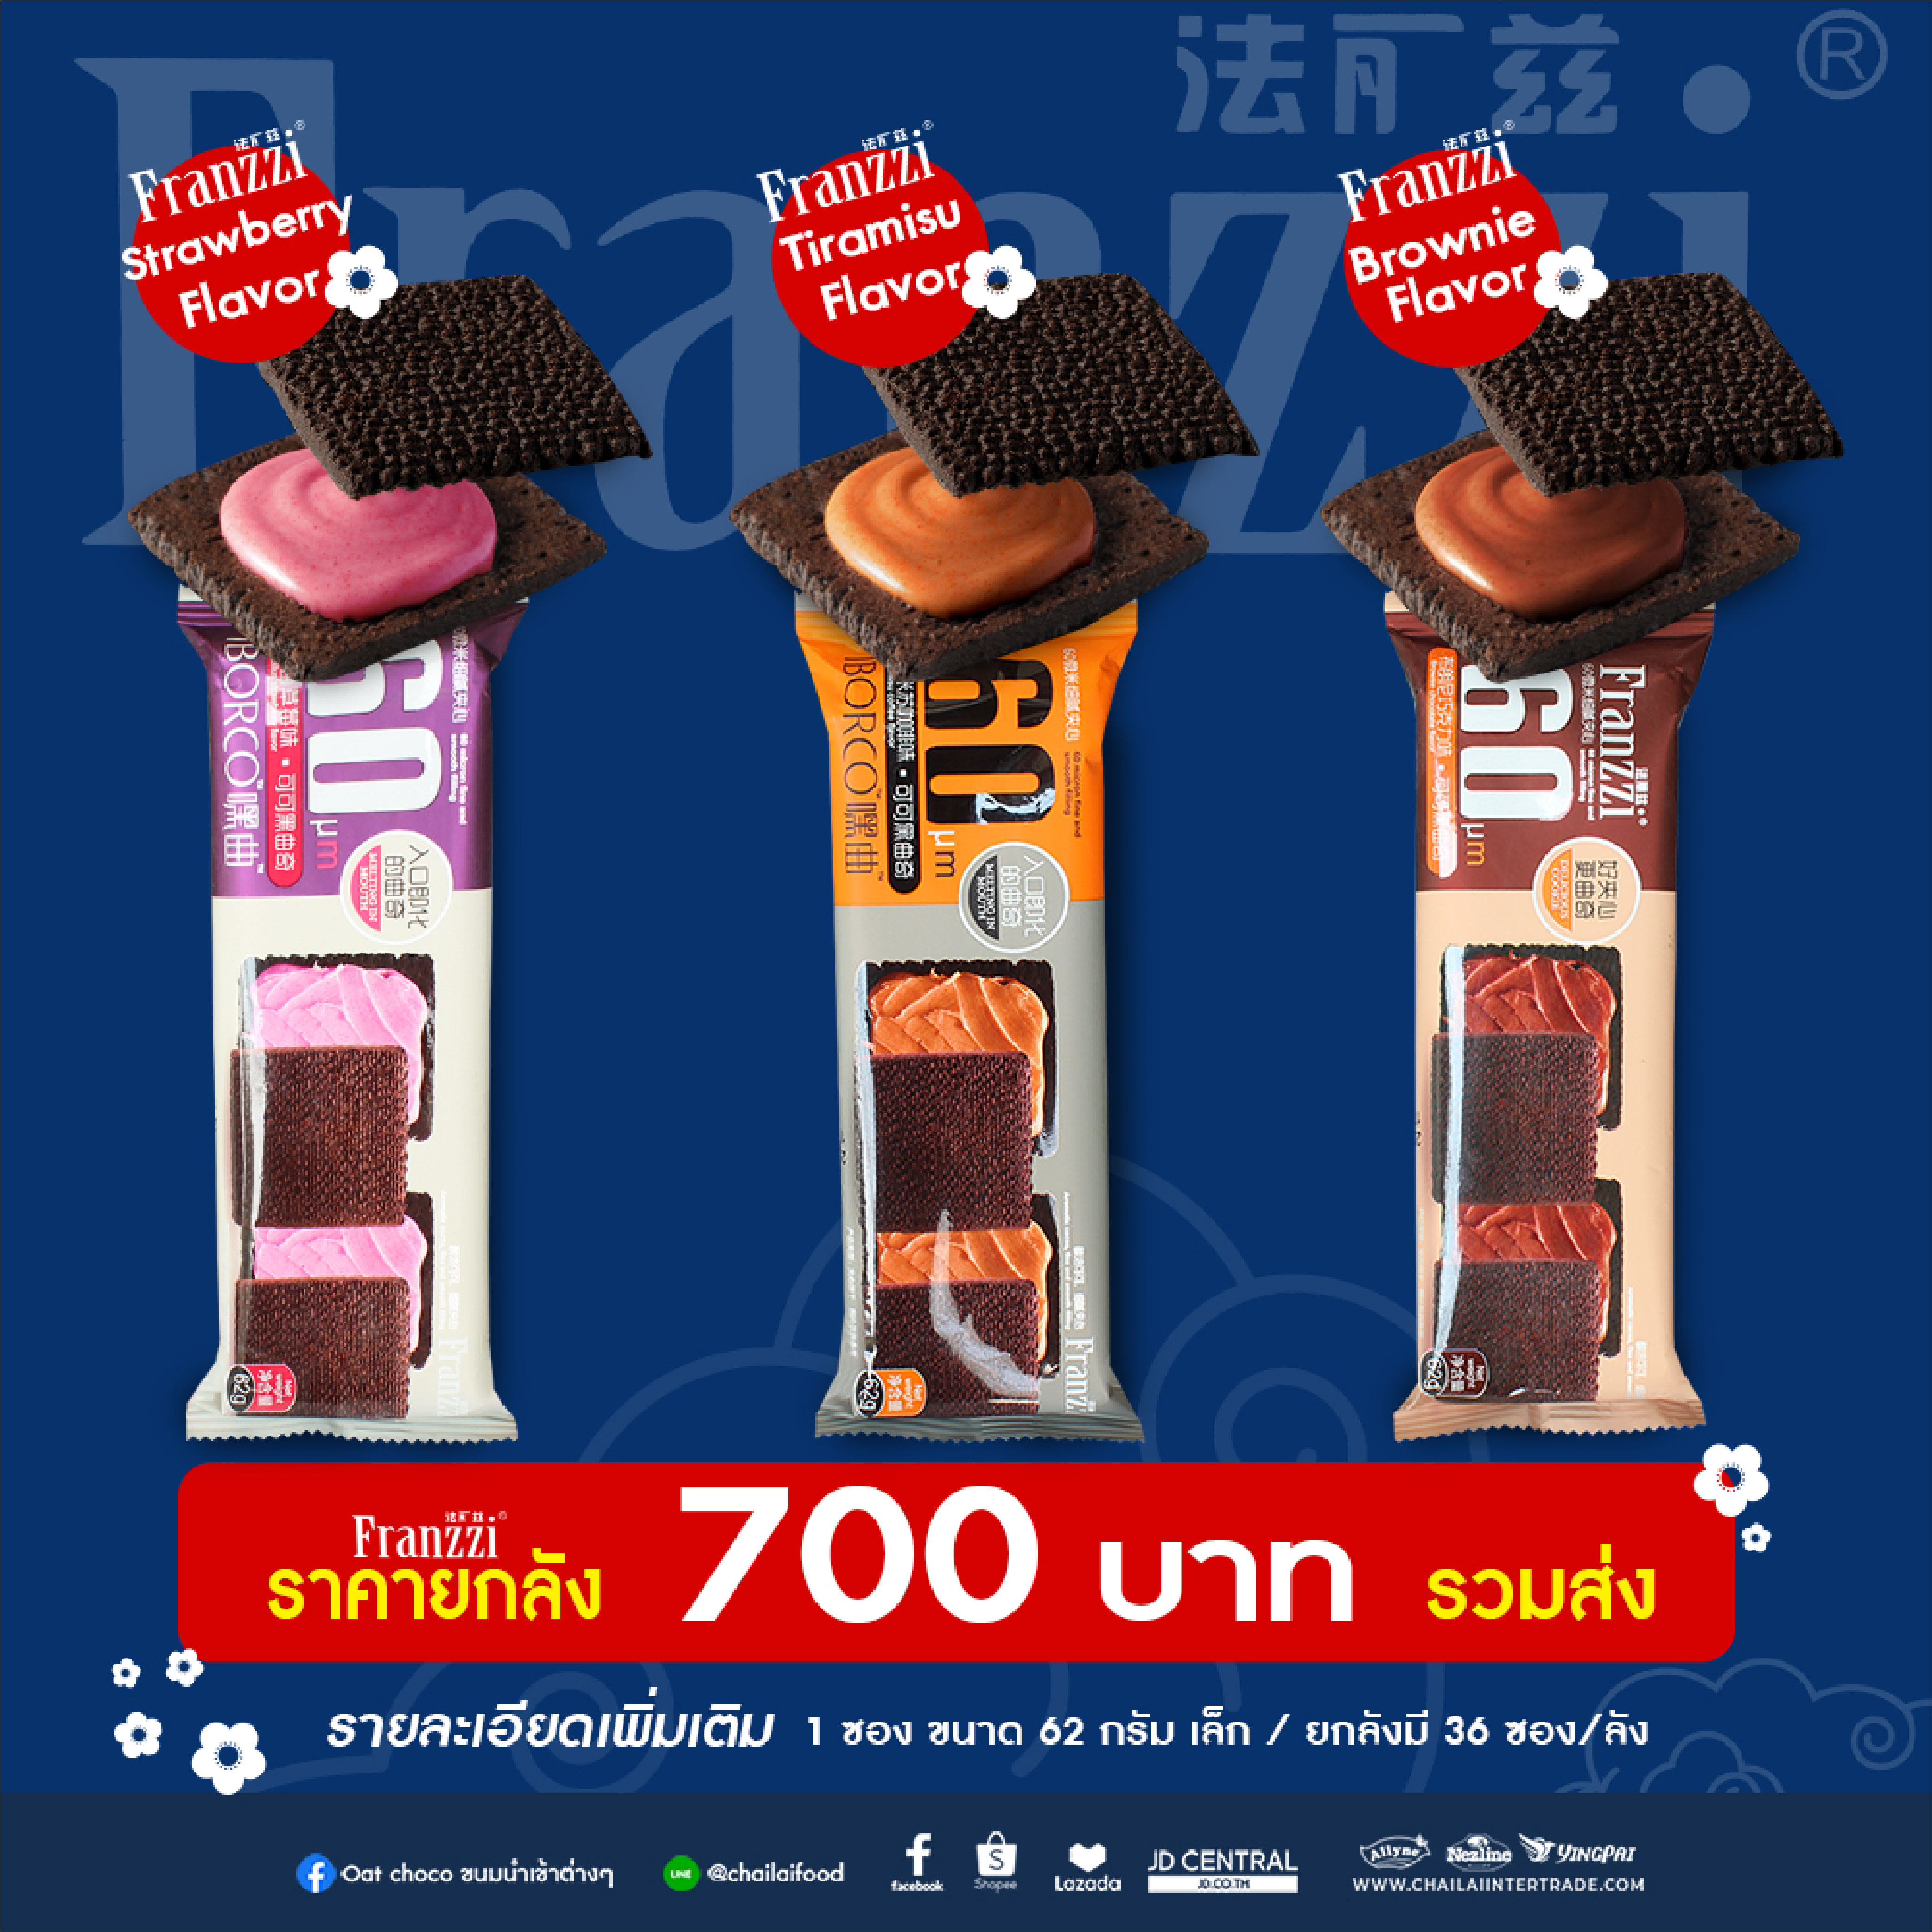 คุกกี้ Sunssi Franzzi Chocolate Cookie  ไฉไล อินเตอร์เทรด บริษัทนำเข้าขนม